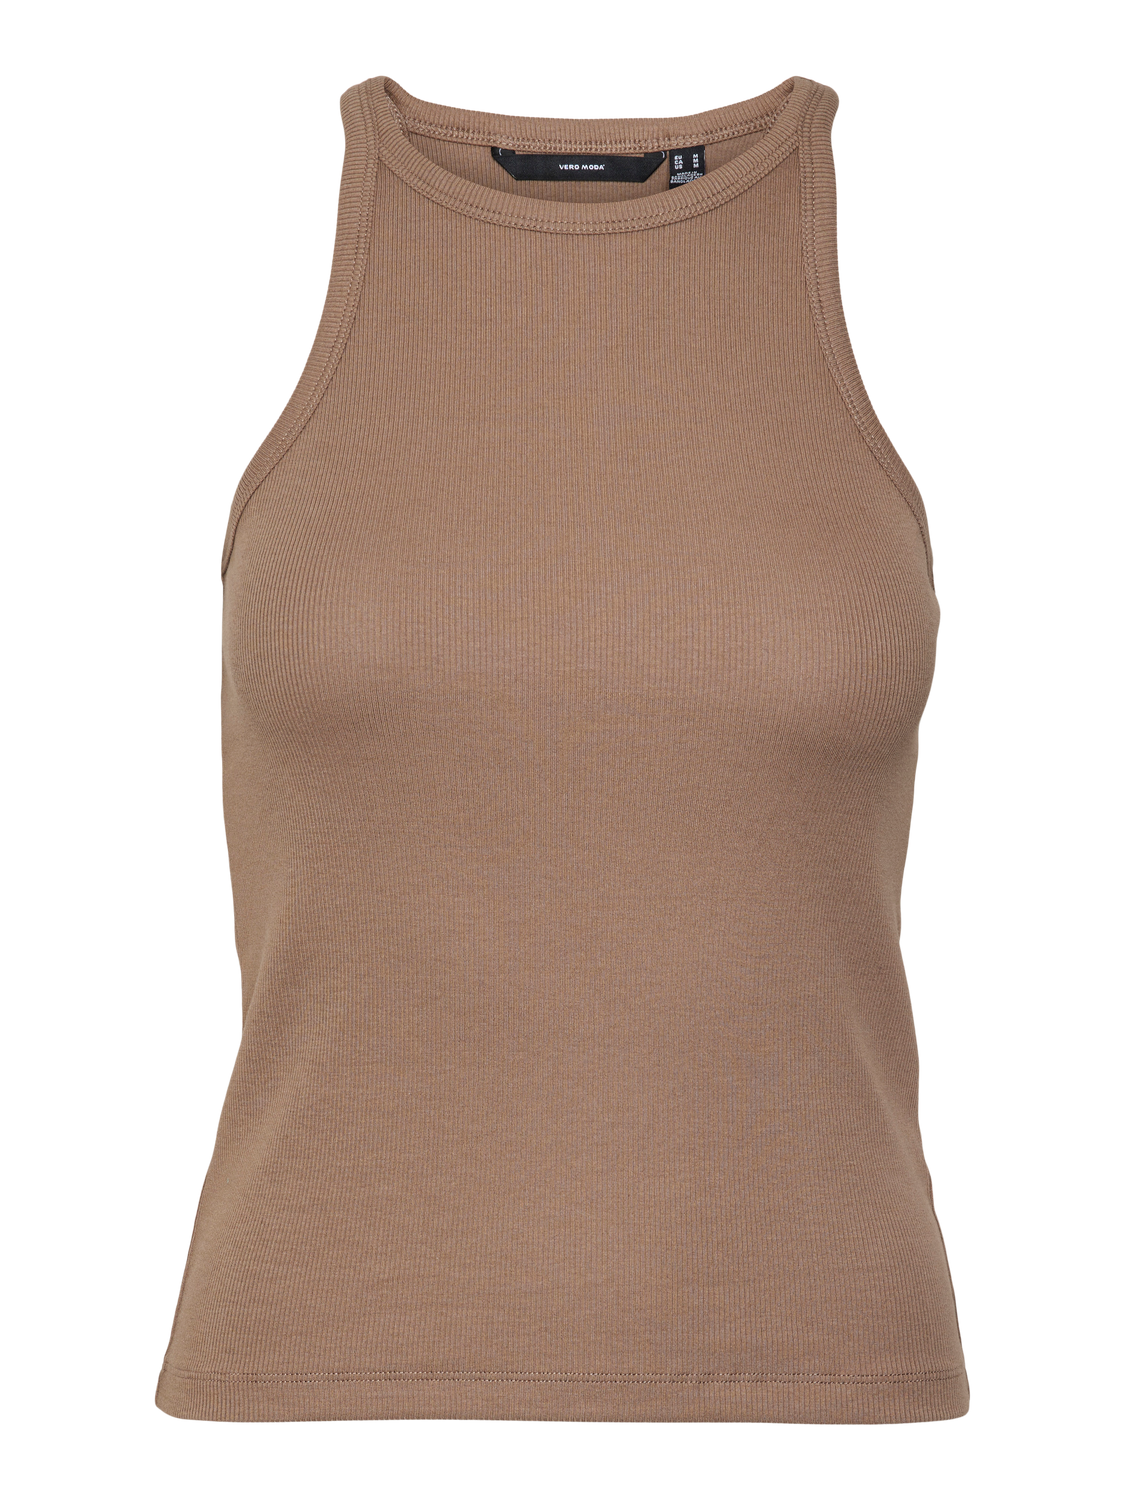 Vero Moda VMCHLOE T-Shirt -Brown Lentil - 10306896